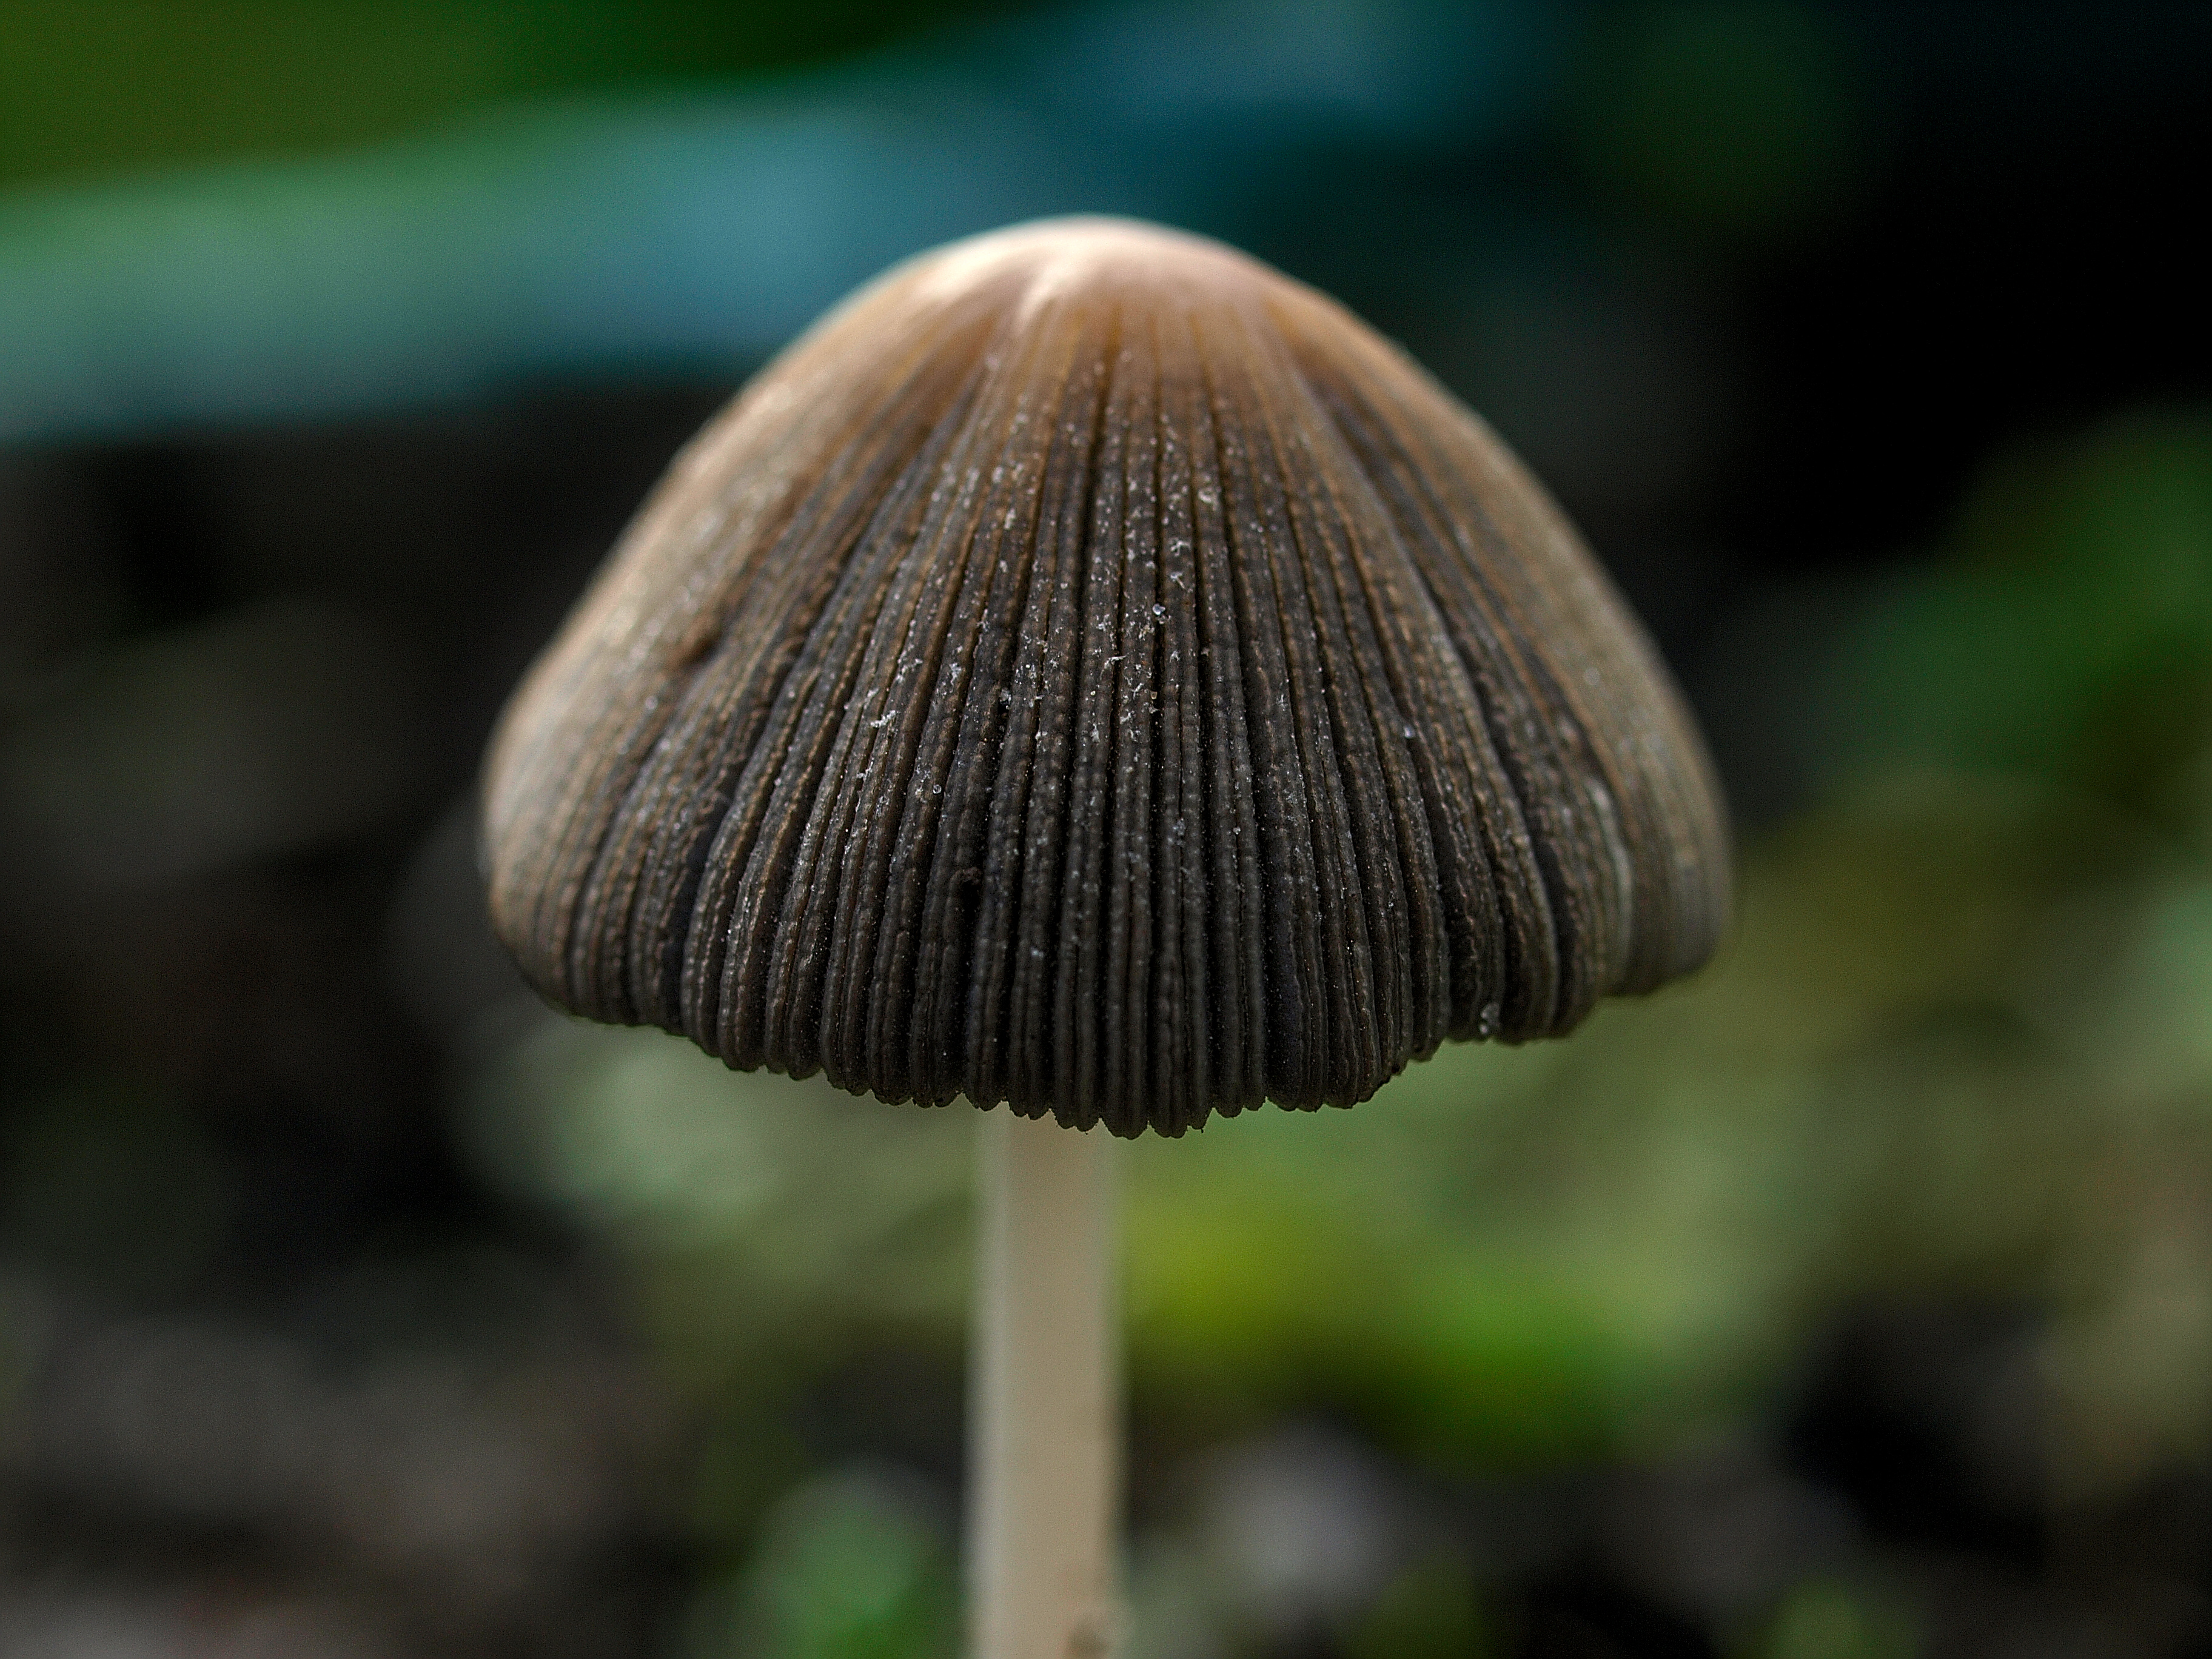 Чернильный гриб или навозник серый (coprinopsis atramentaria): фото, описание, использование от алкоголизма и как готовить условно-съедобный гриб